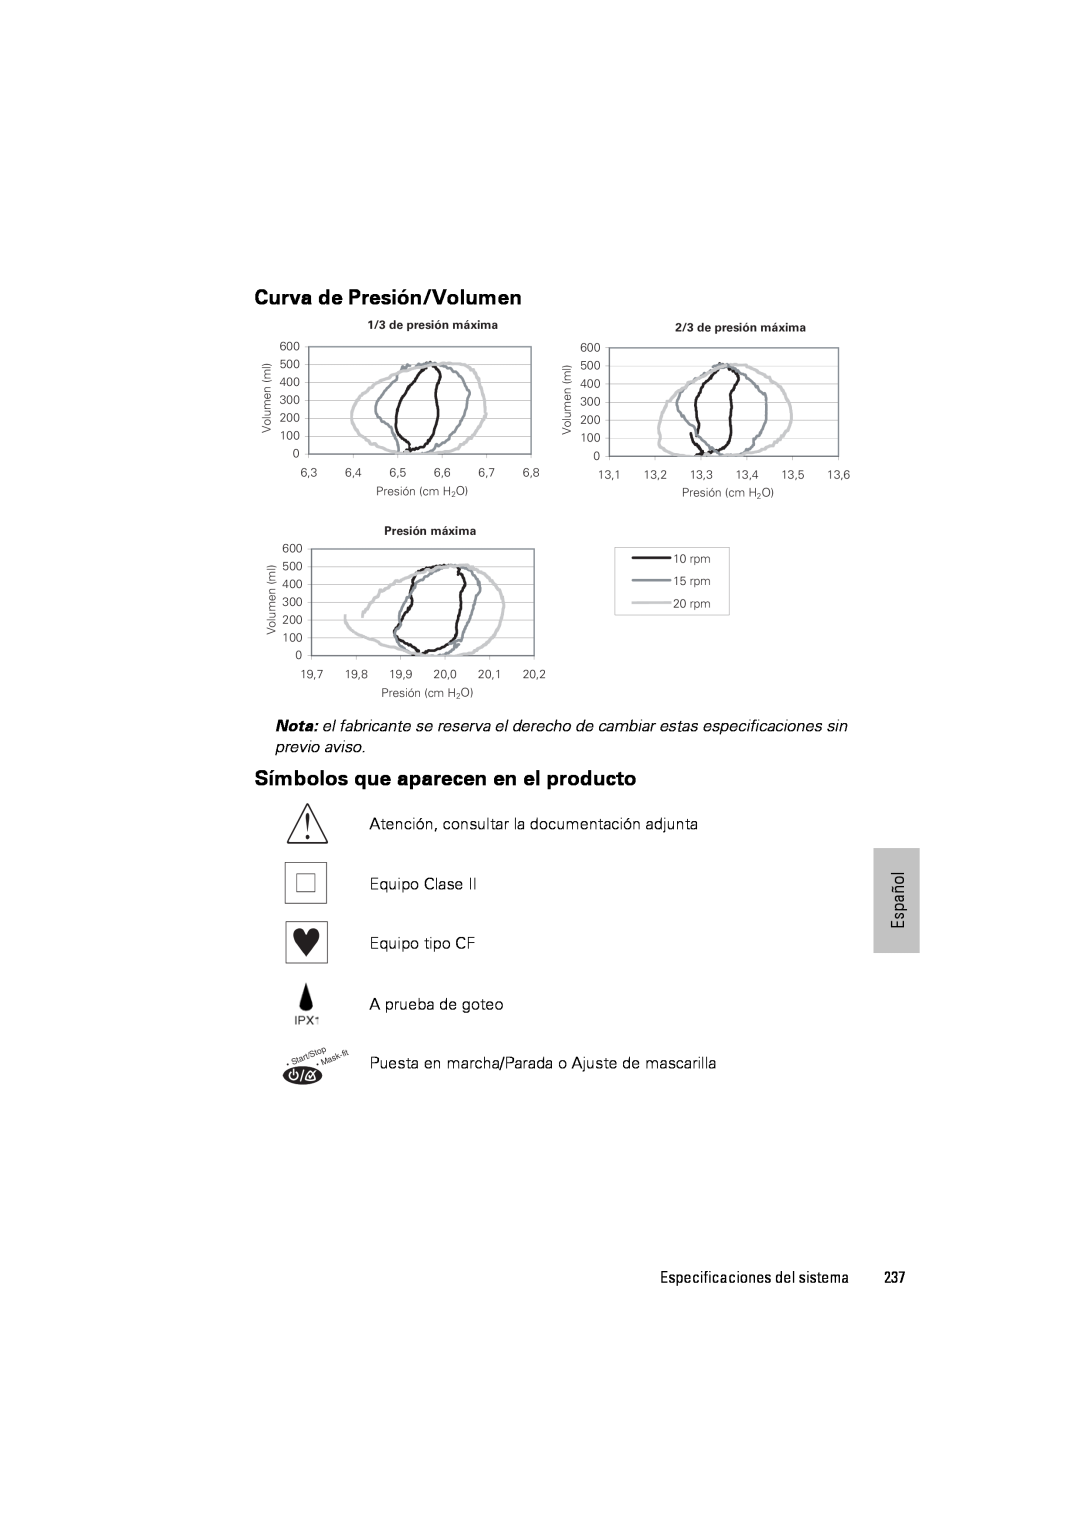 ResMed III & III ST Curva de Presión/Volumen, Símbolos que aparecen en el producto, 2/3 de presión máxima, Presión máxima 